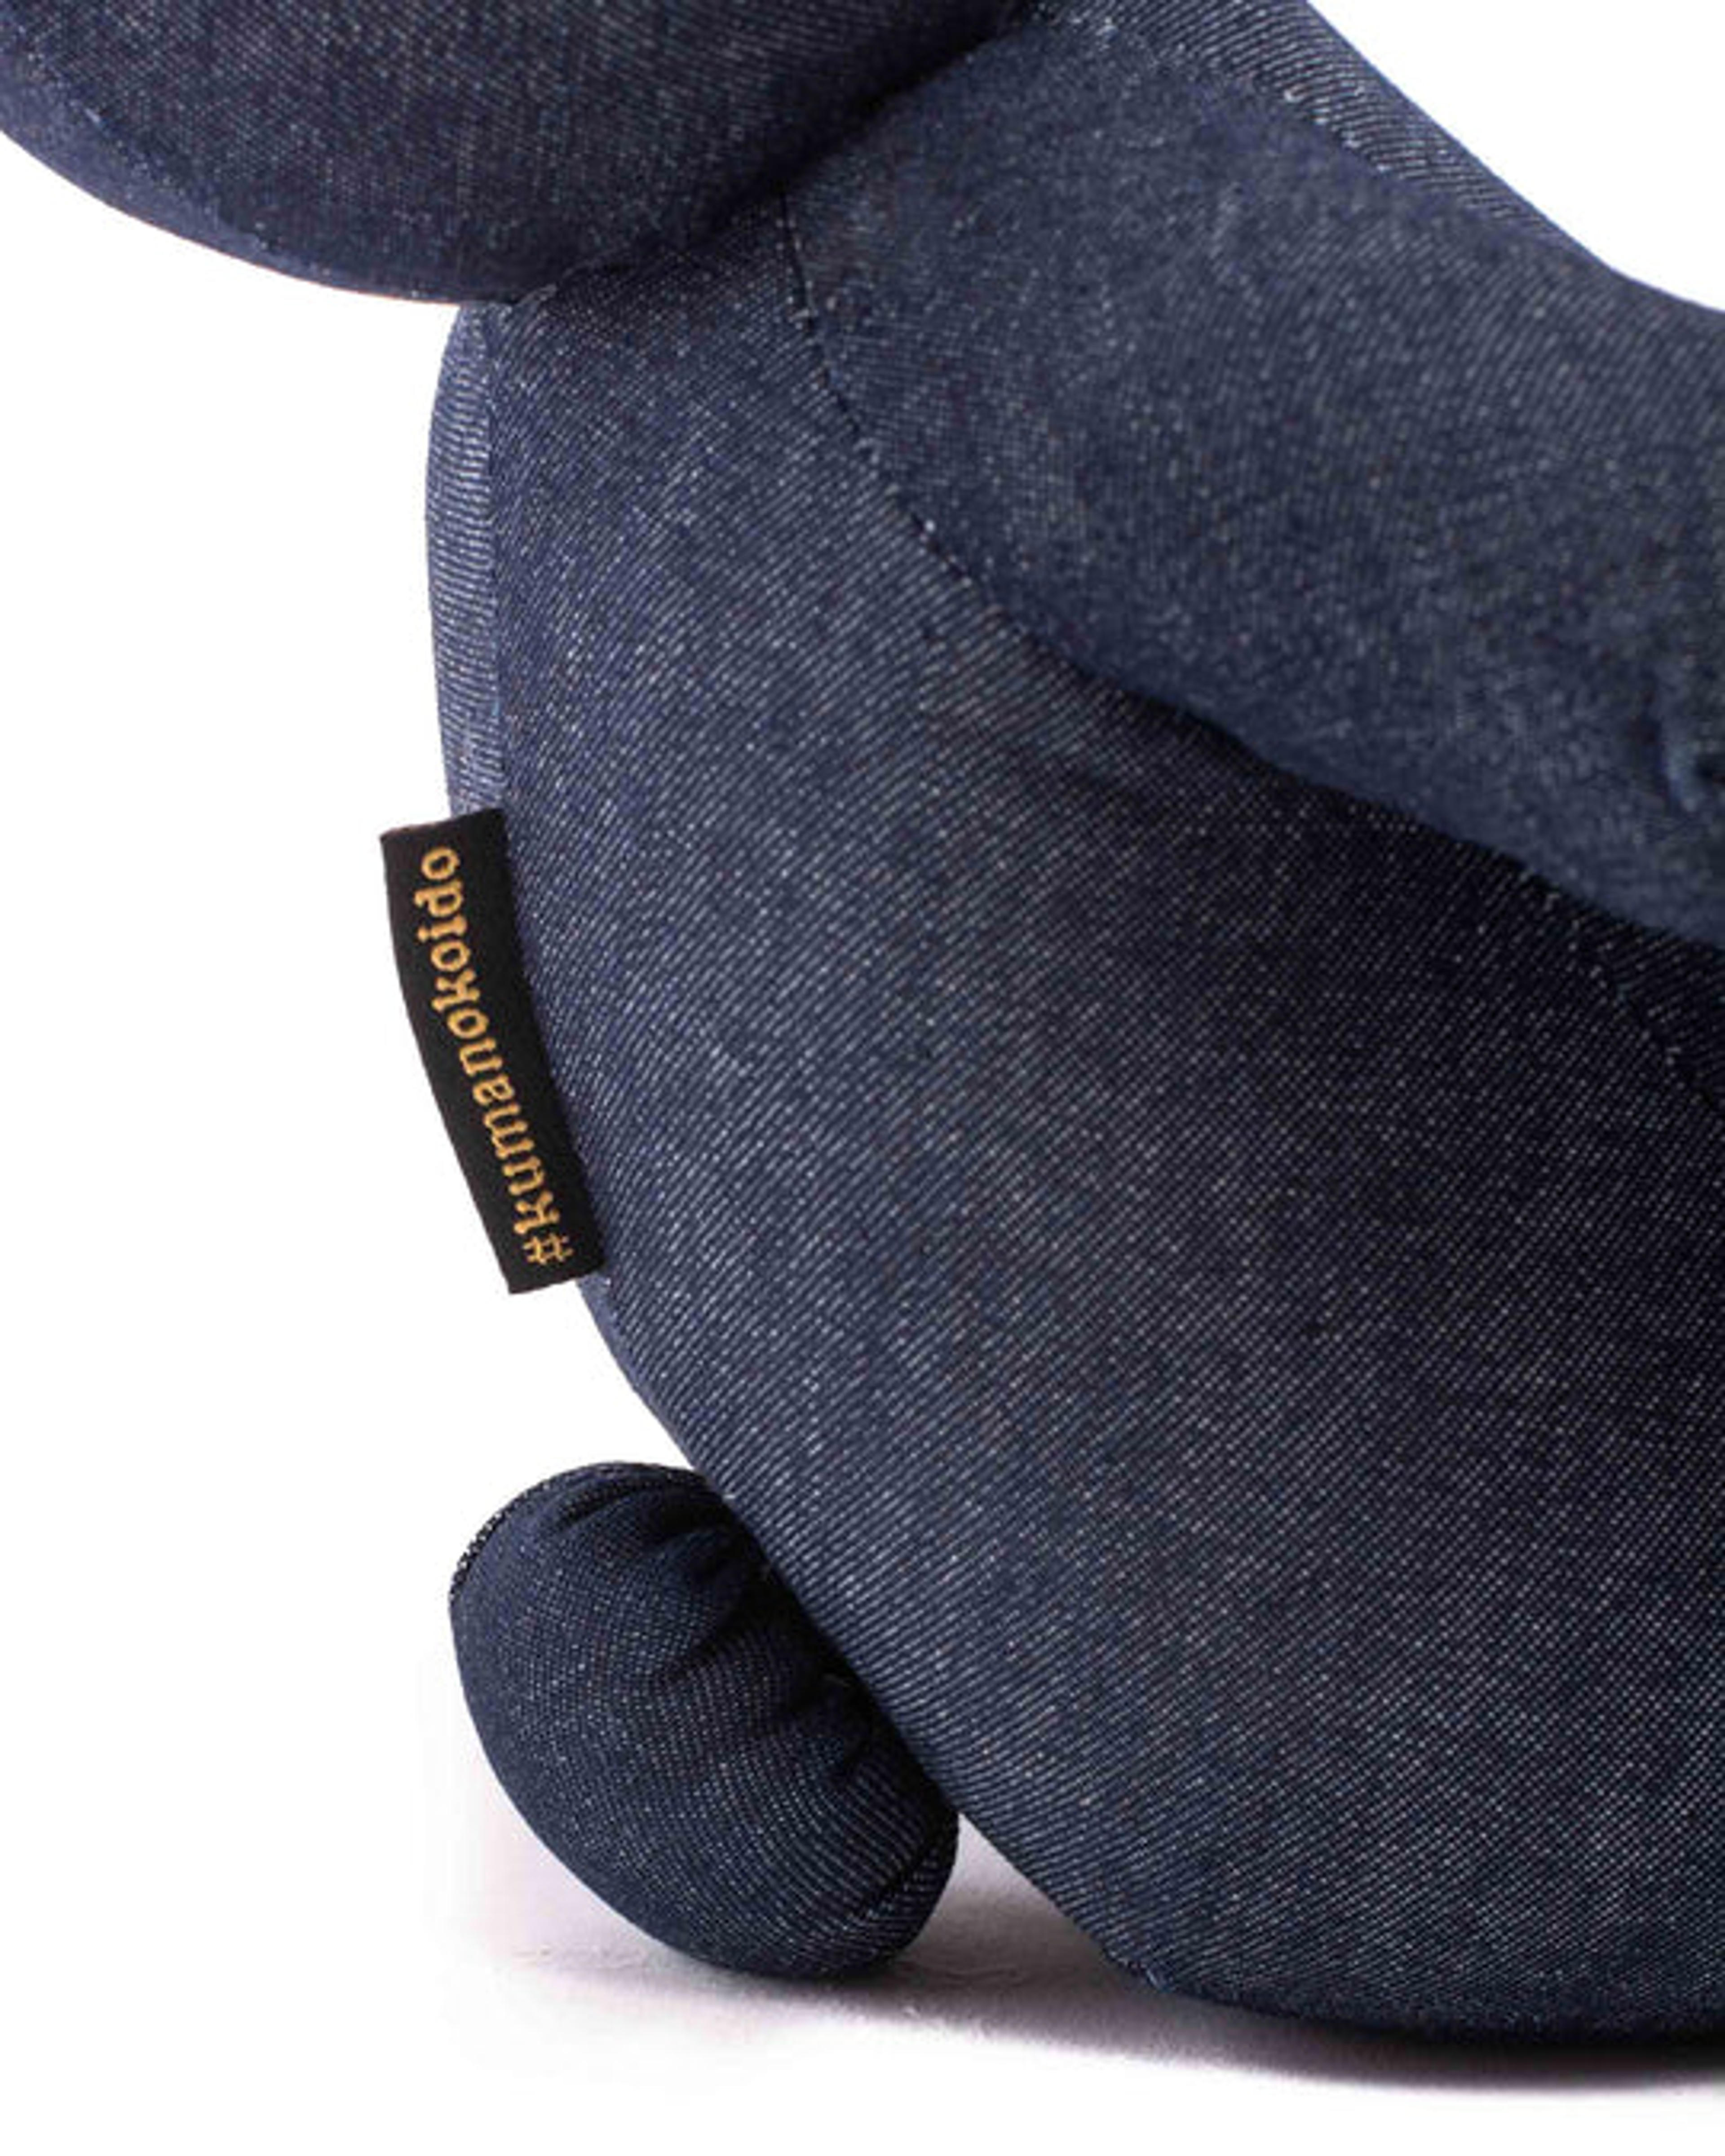 Engineered Garments x Kumanokoido Stuffed Animal Bear Indigo Industria